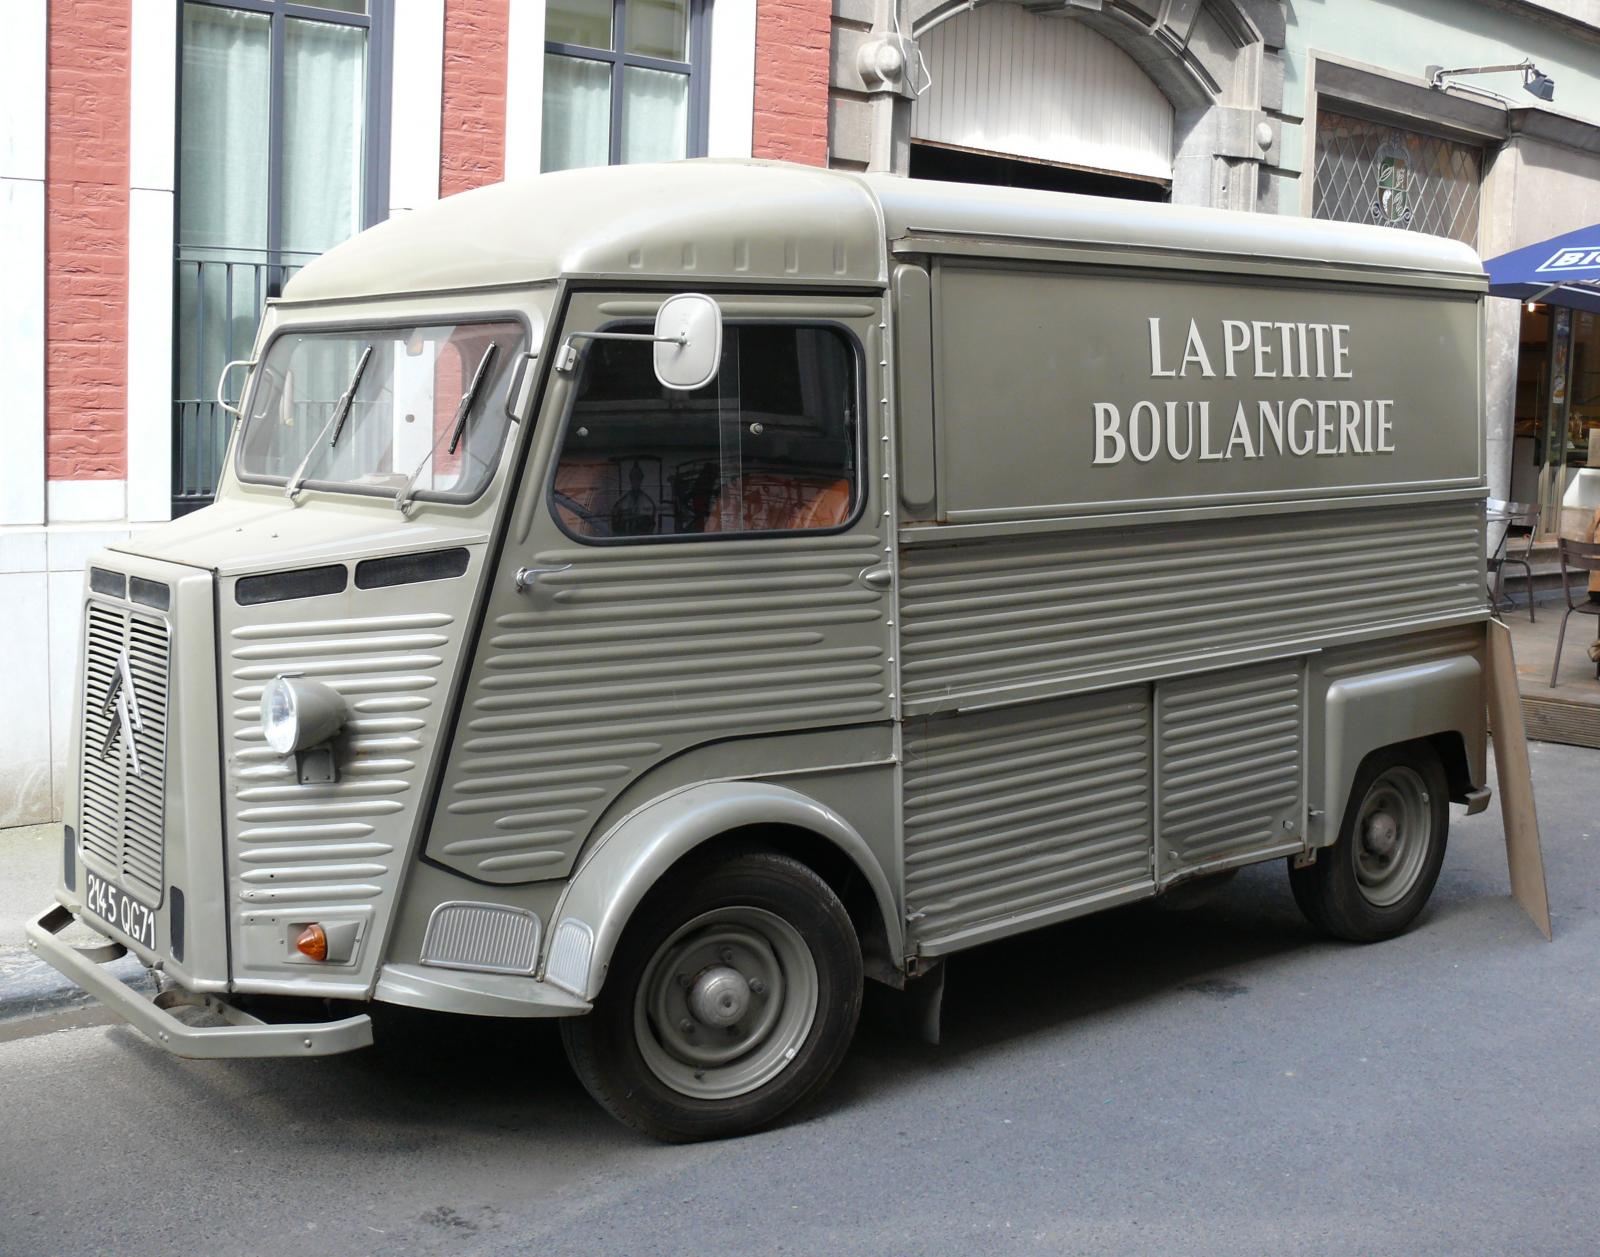 Type H La Petite Boulangerie (''The Little Bakery'')